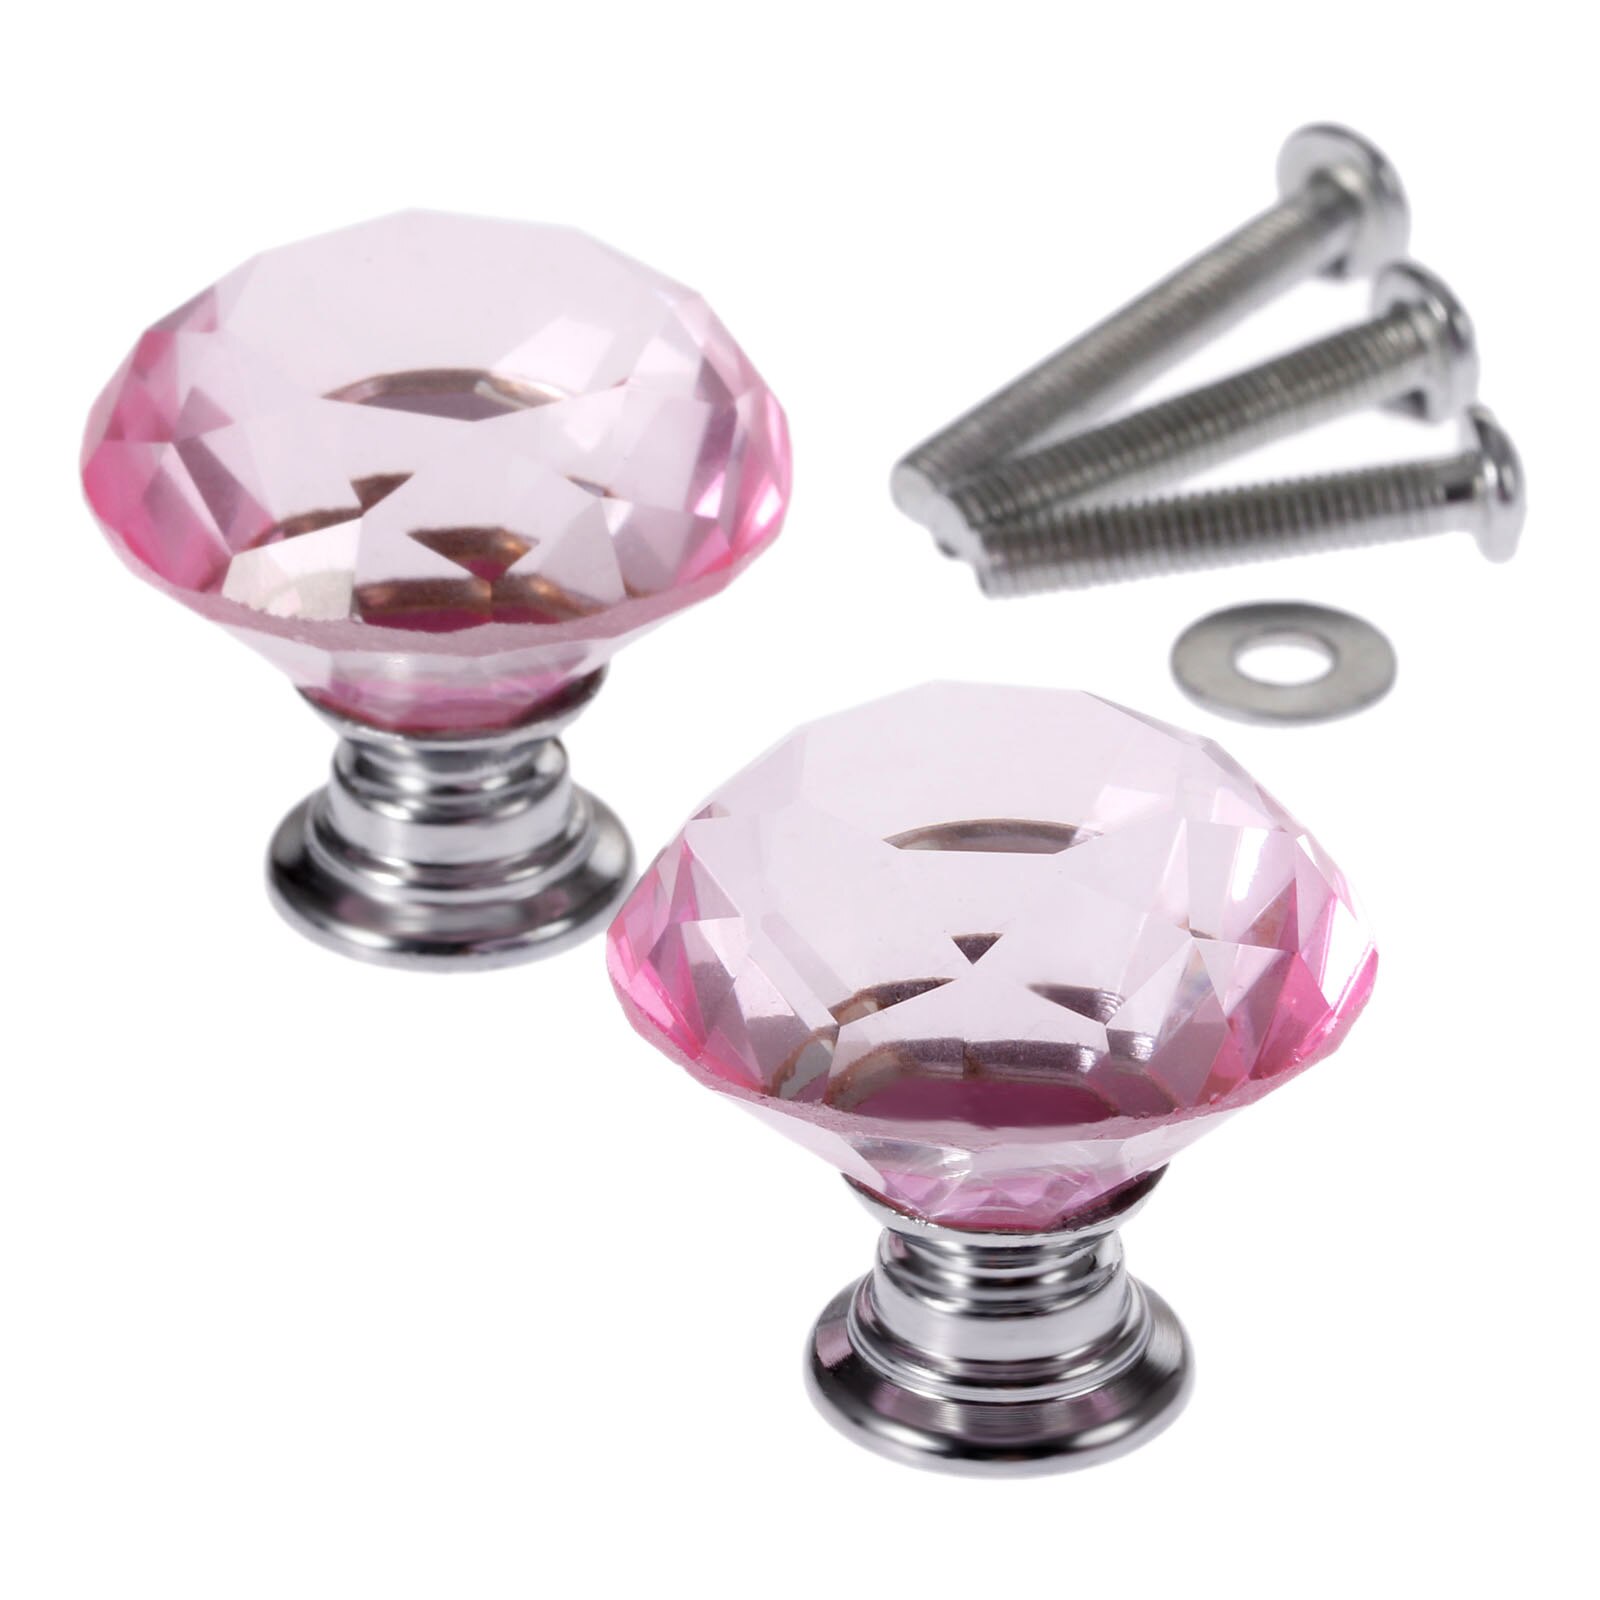 2 Stuks 30 Mm Meubilair Handvat Crystal Glass Knop Voor Deur Ladeblok Garderobe Kast Deurknoppen